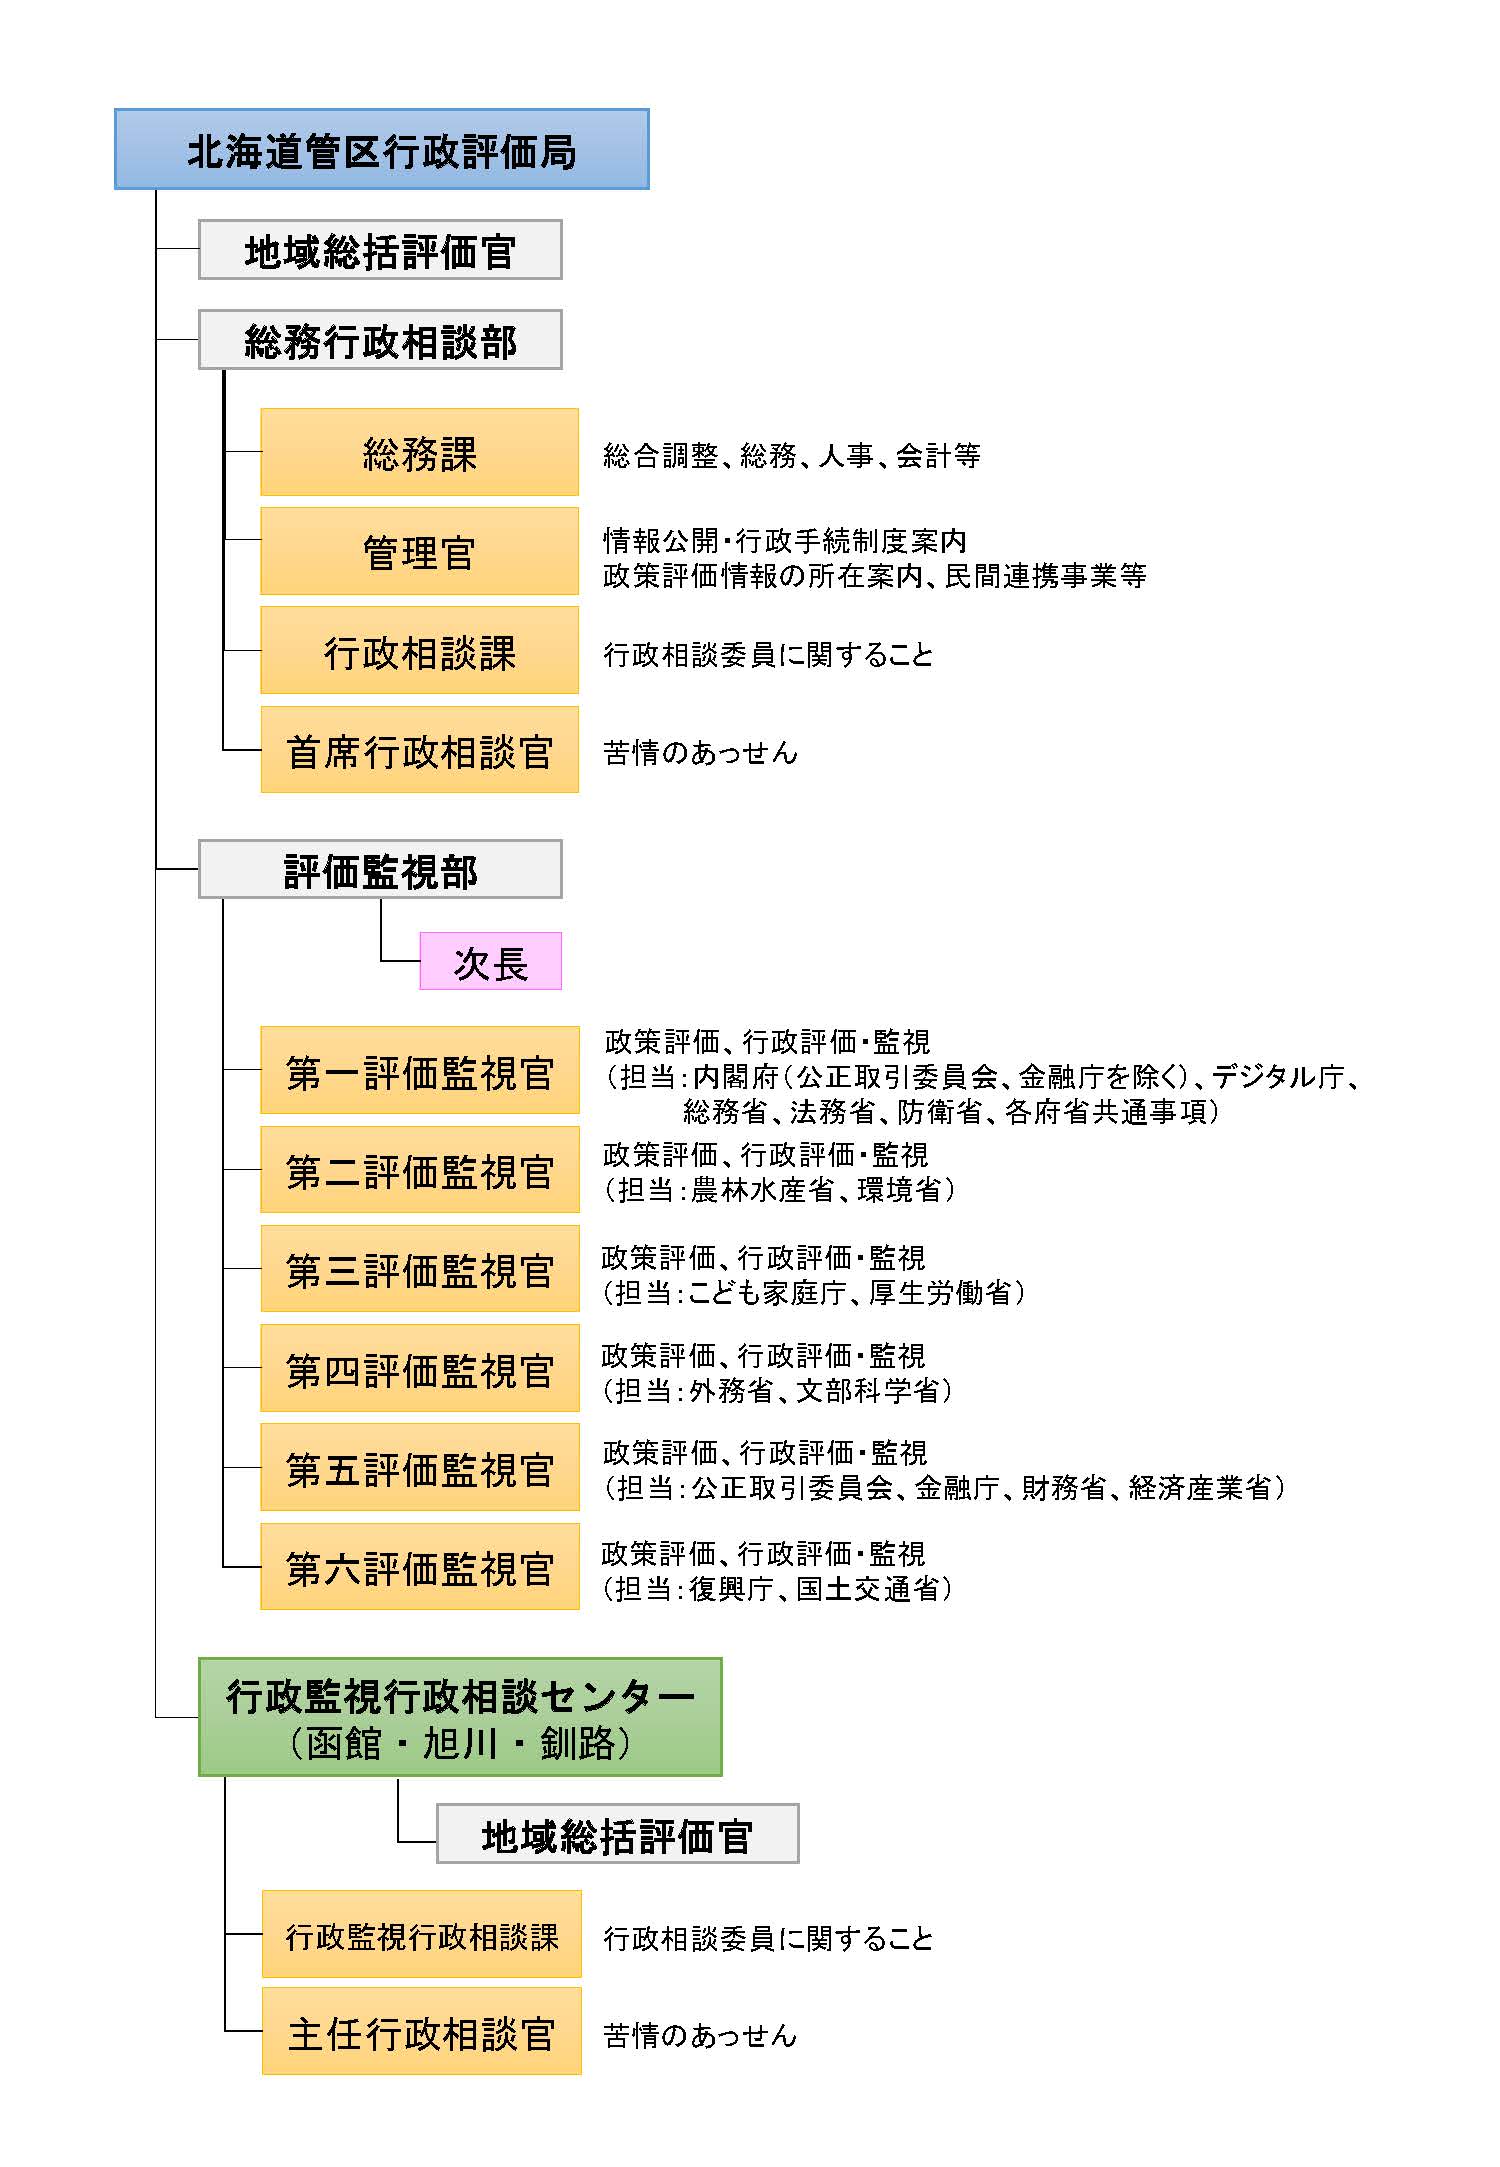 北海道管区行政評価局の組織図